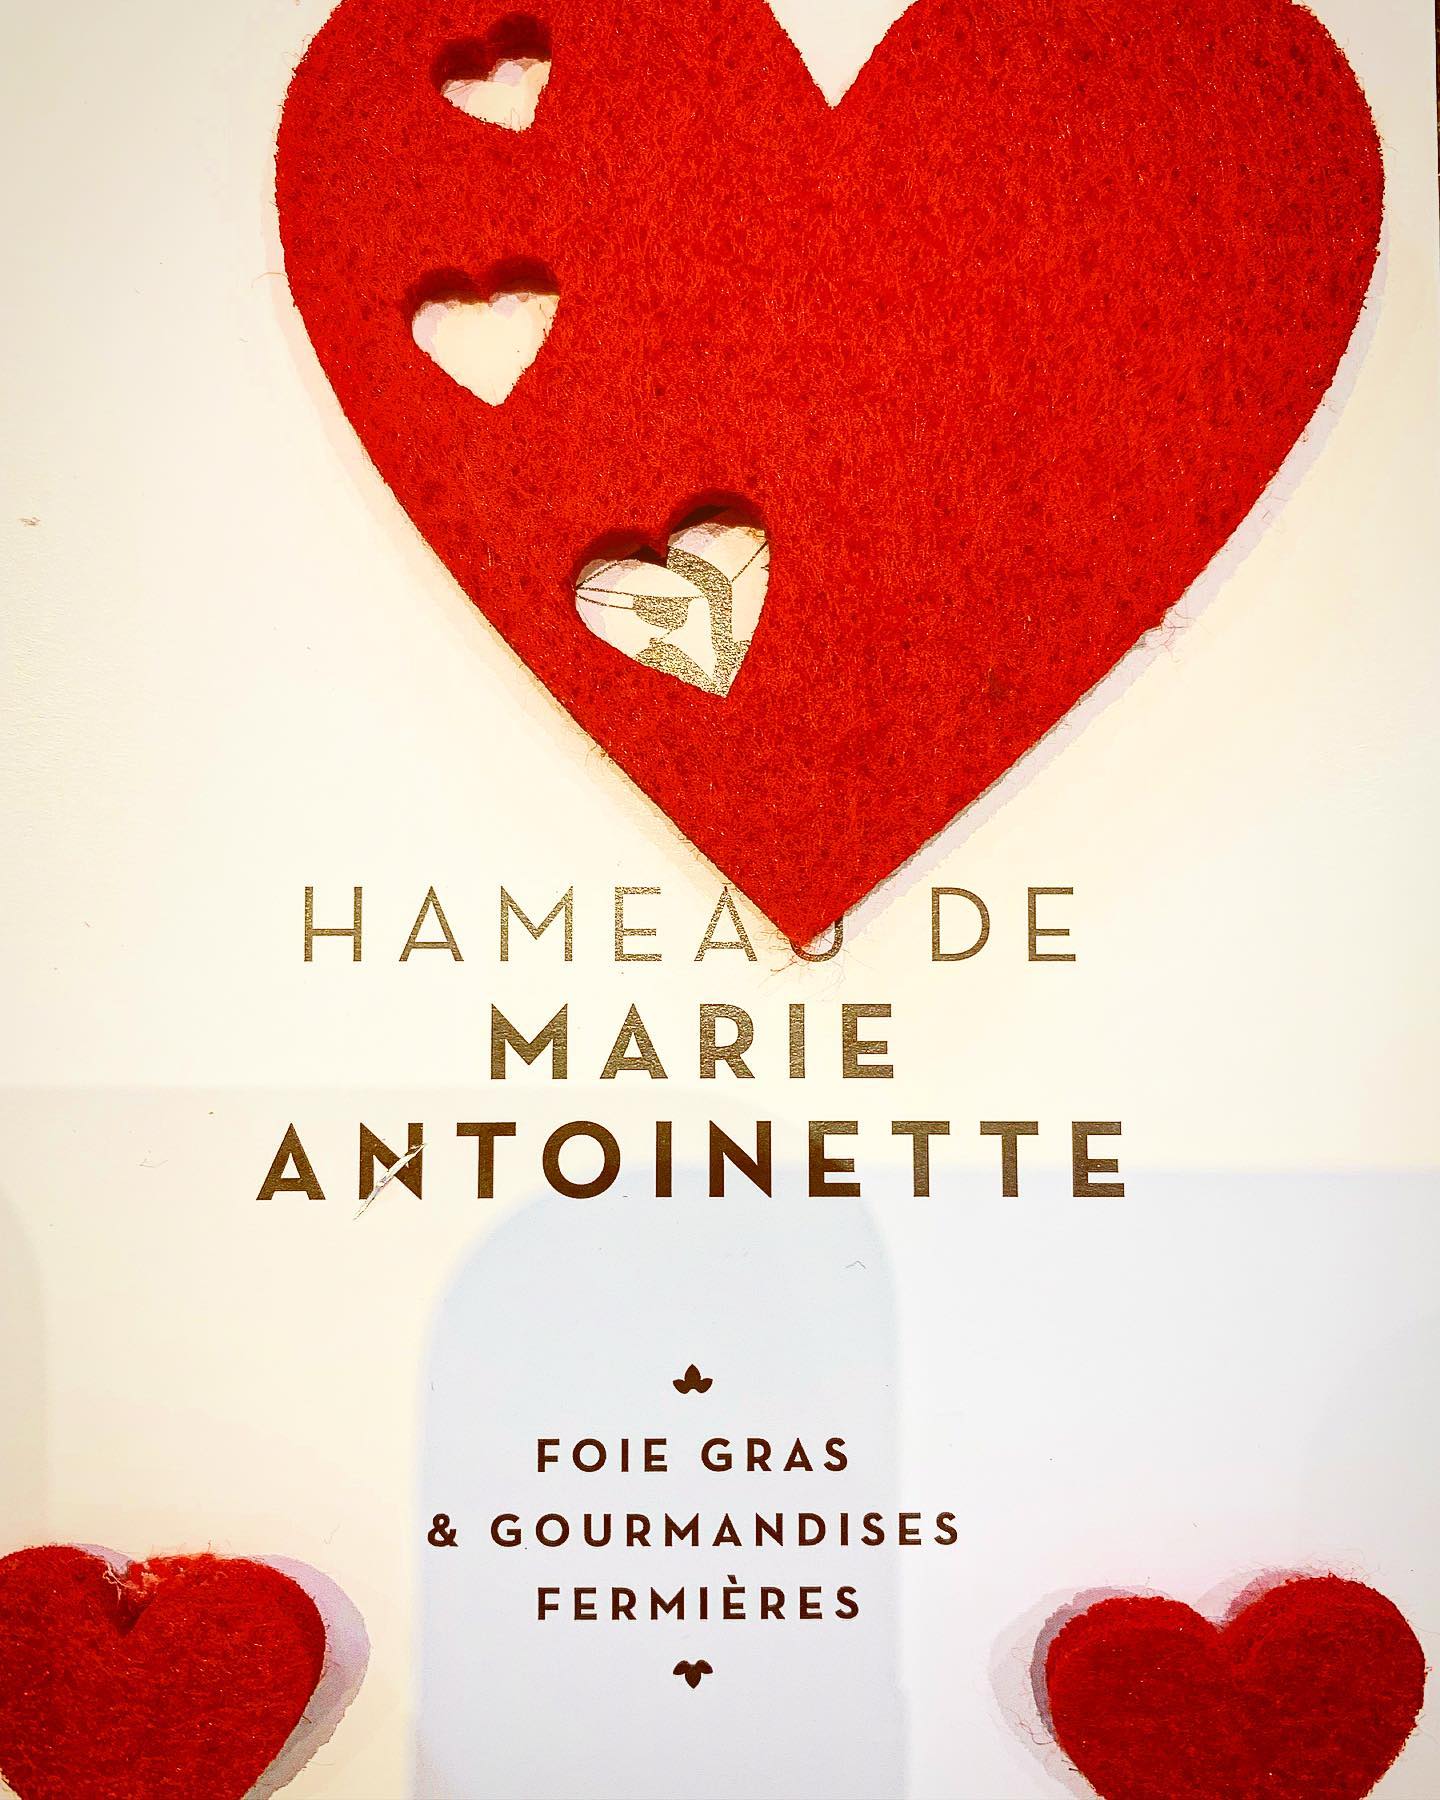 Hameau de Marie Antoinette - ©dr